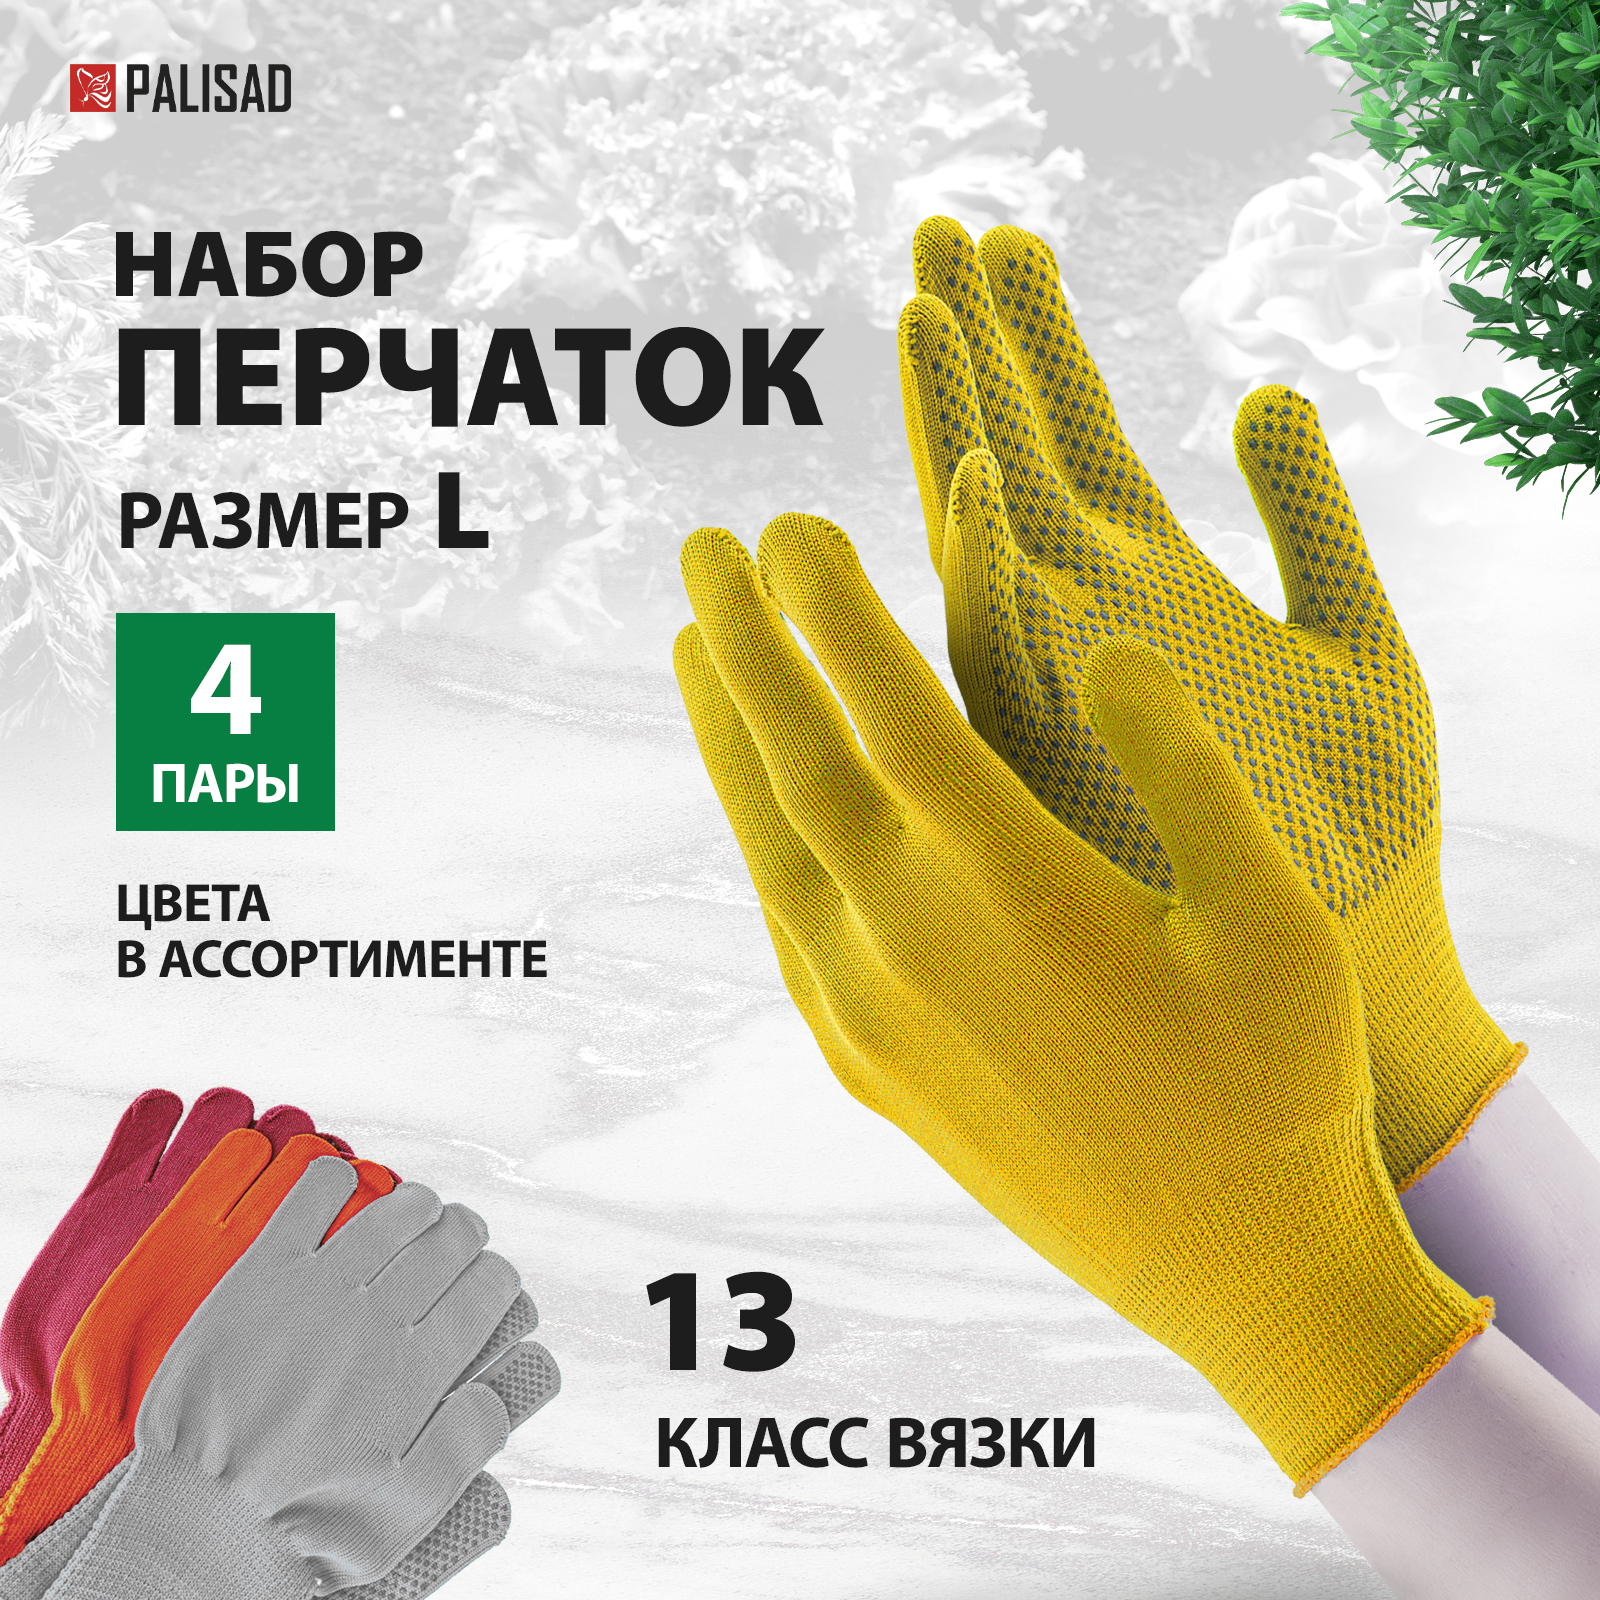 Перчатки в наборе, 4 пары, цвета в ассортименте, ПВХ точка, L, Россия, PALISAD 67852 перчатки землекопа с когтями palisad